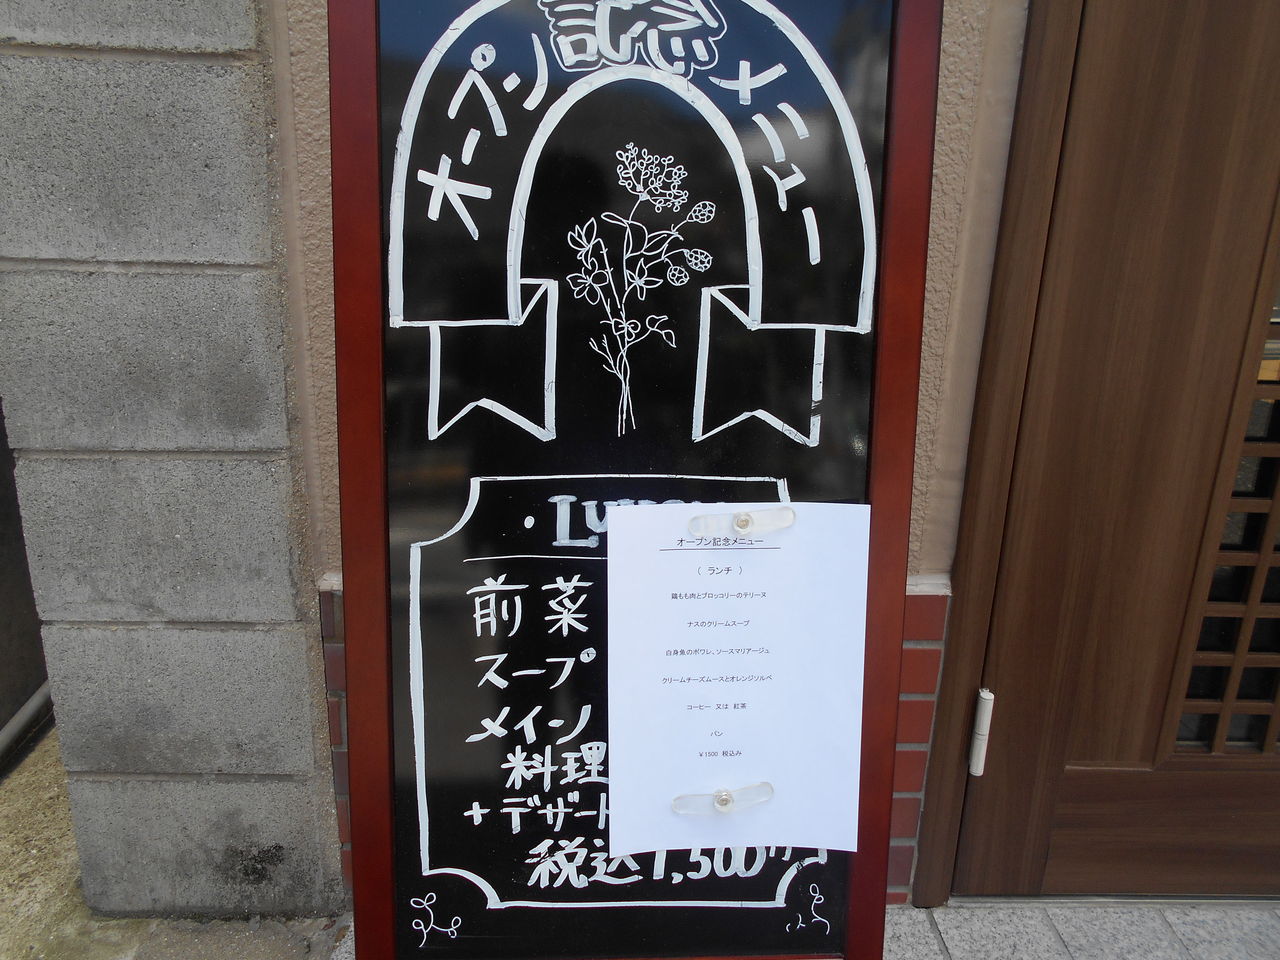 金庫屋 Restaurant Takeuchi レストラン タケウチ 女性金庫診断士ちょこっと日記